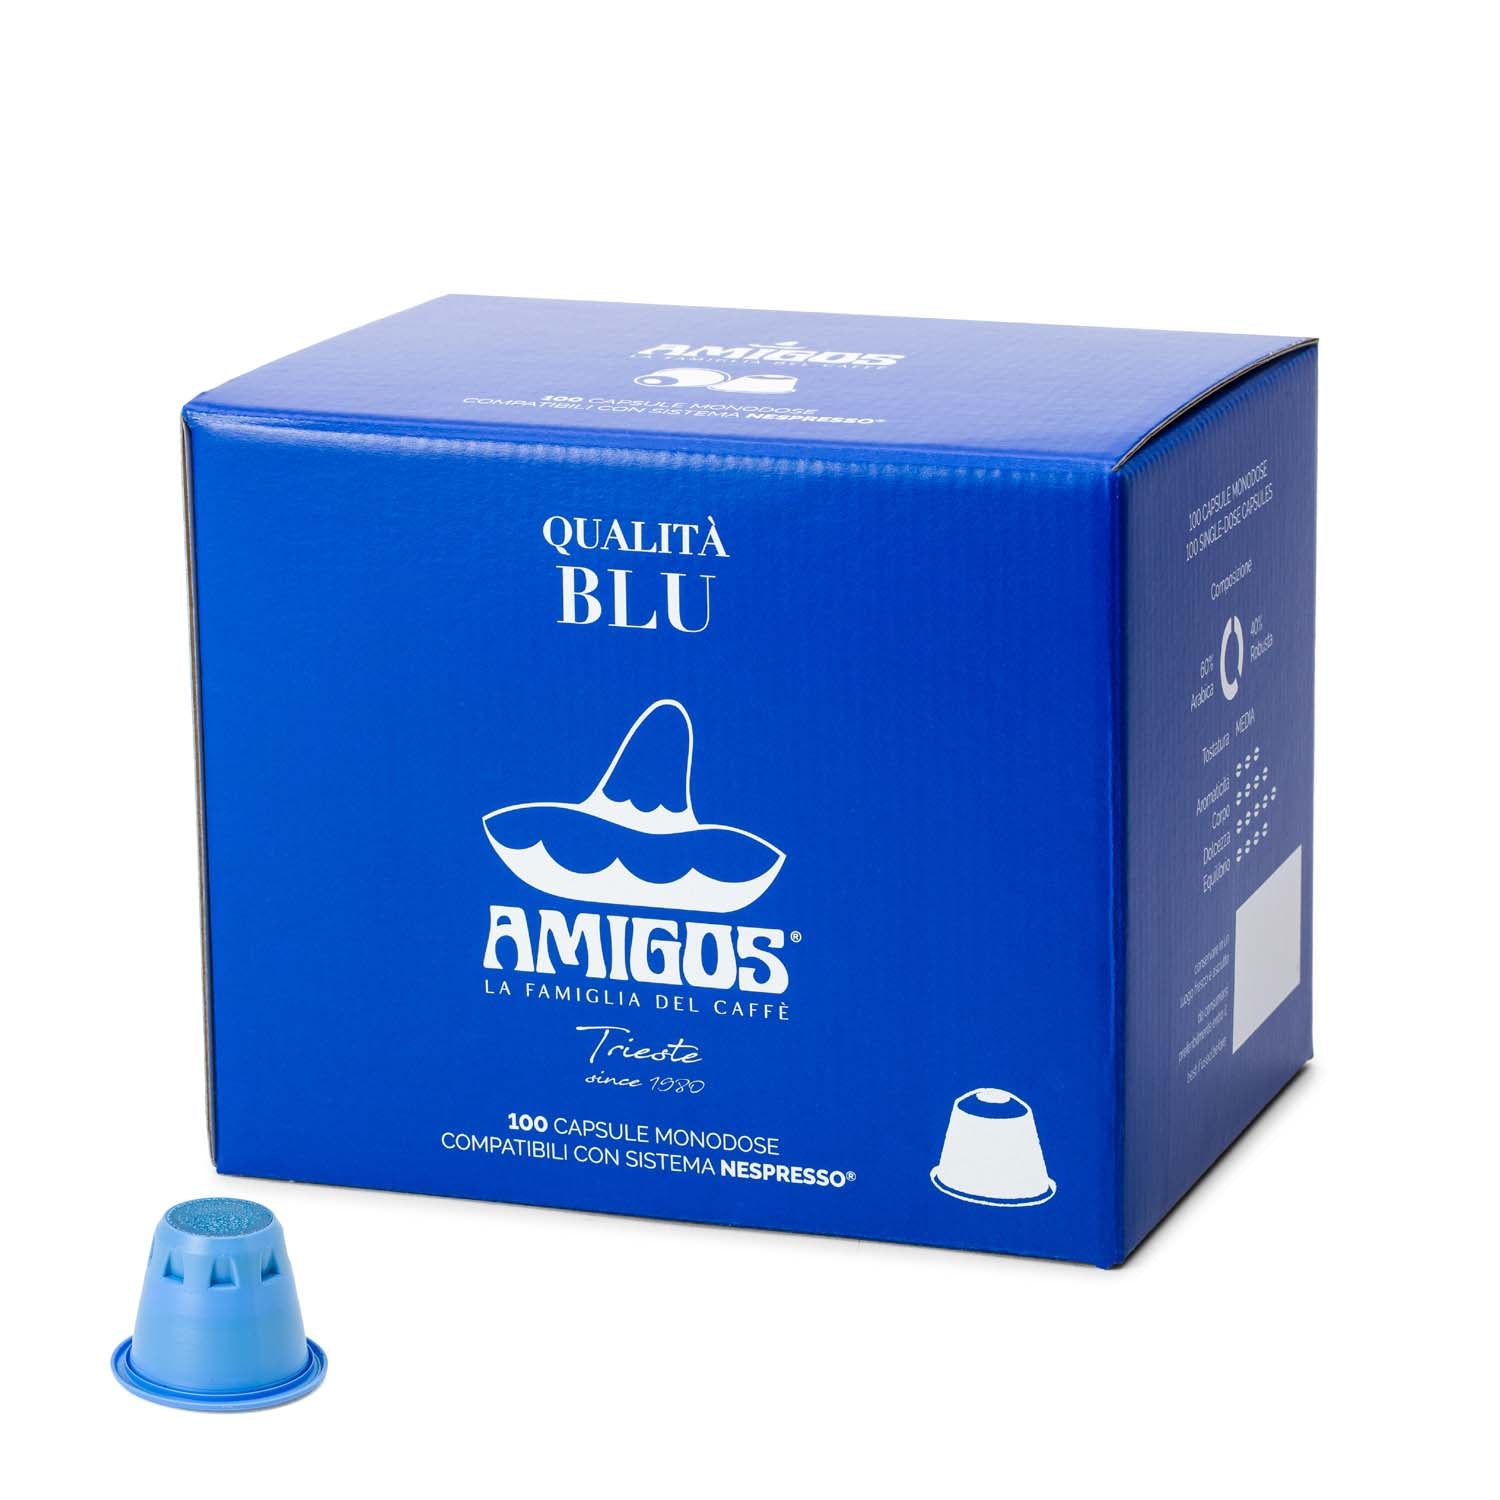 Qualità Blu in capsule Nespresso®